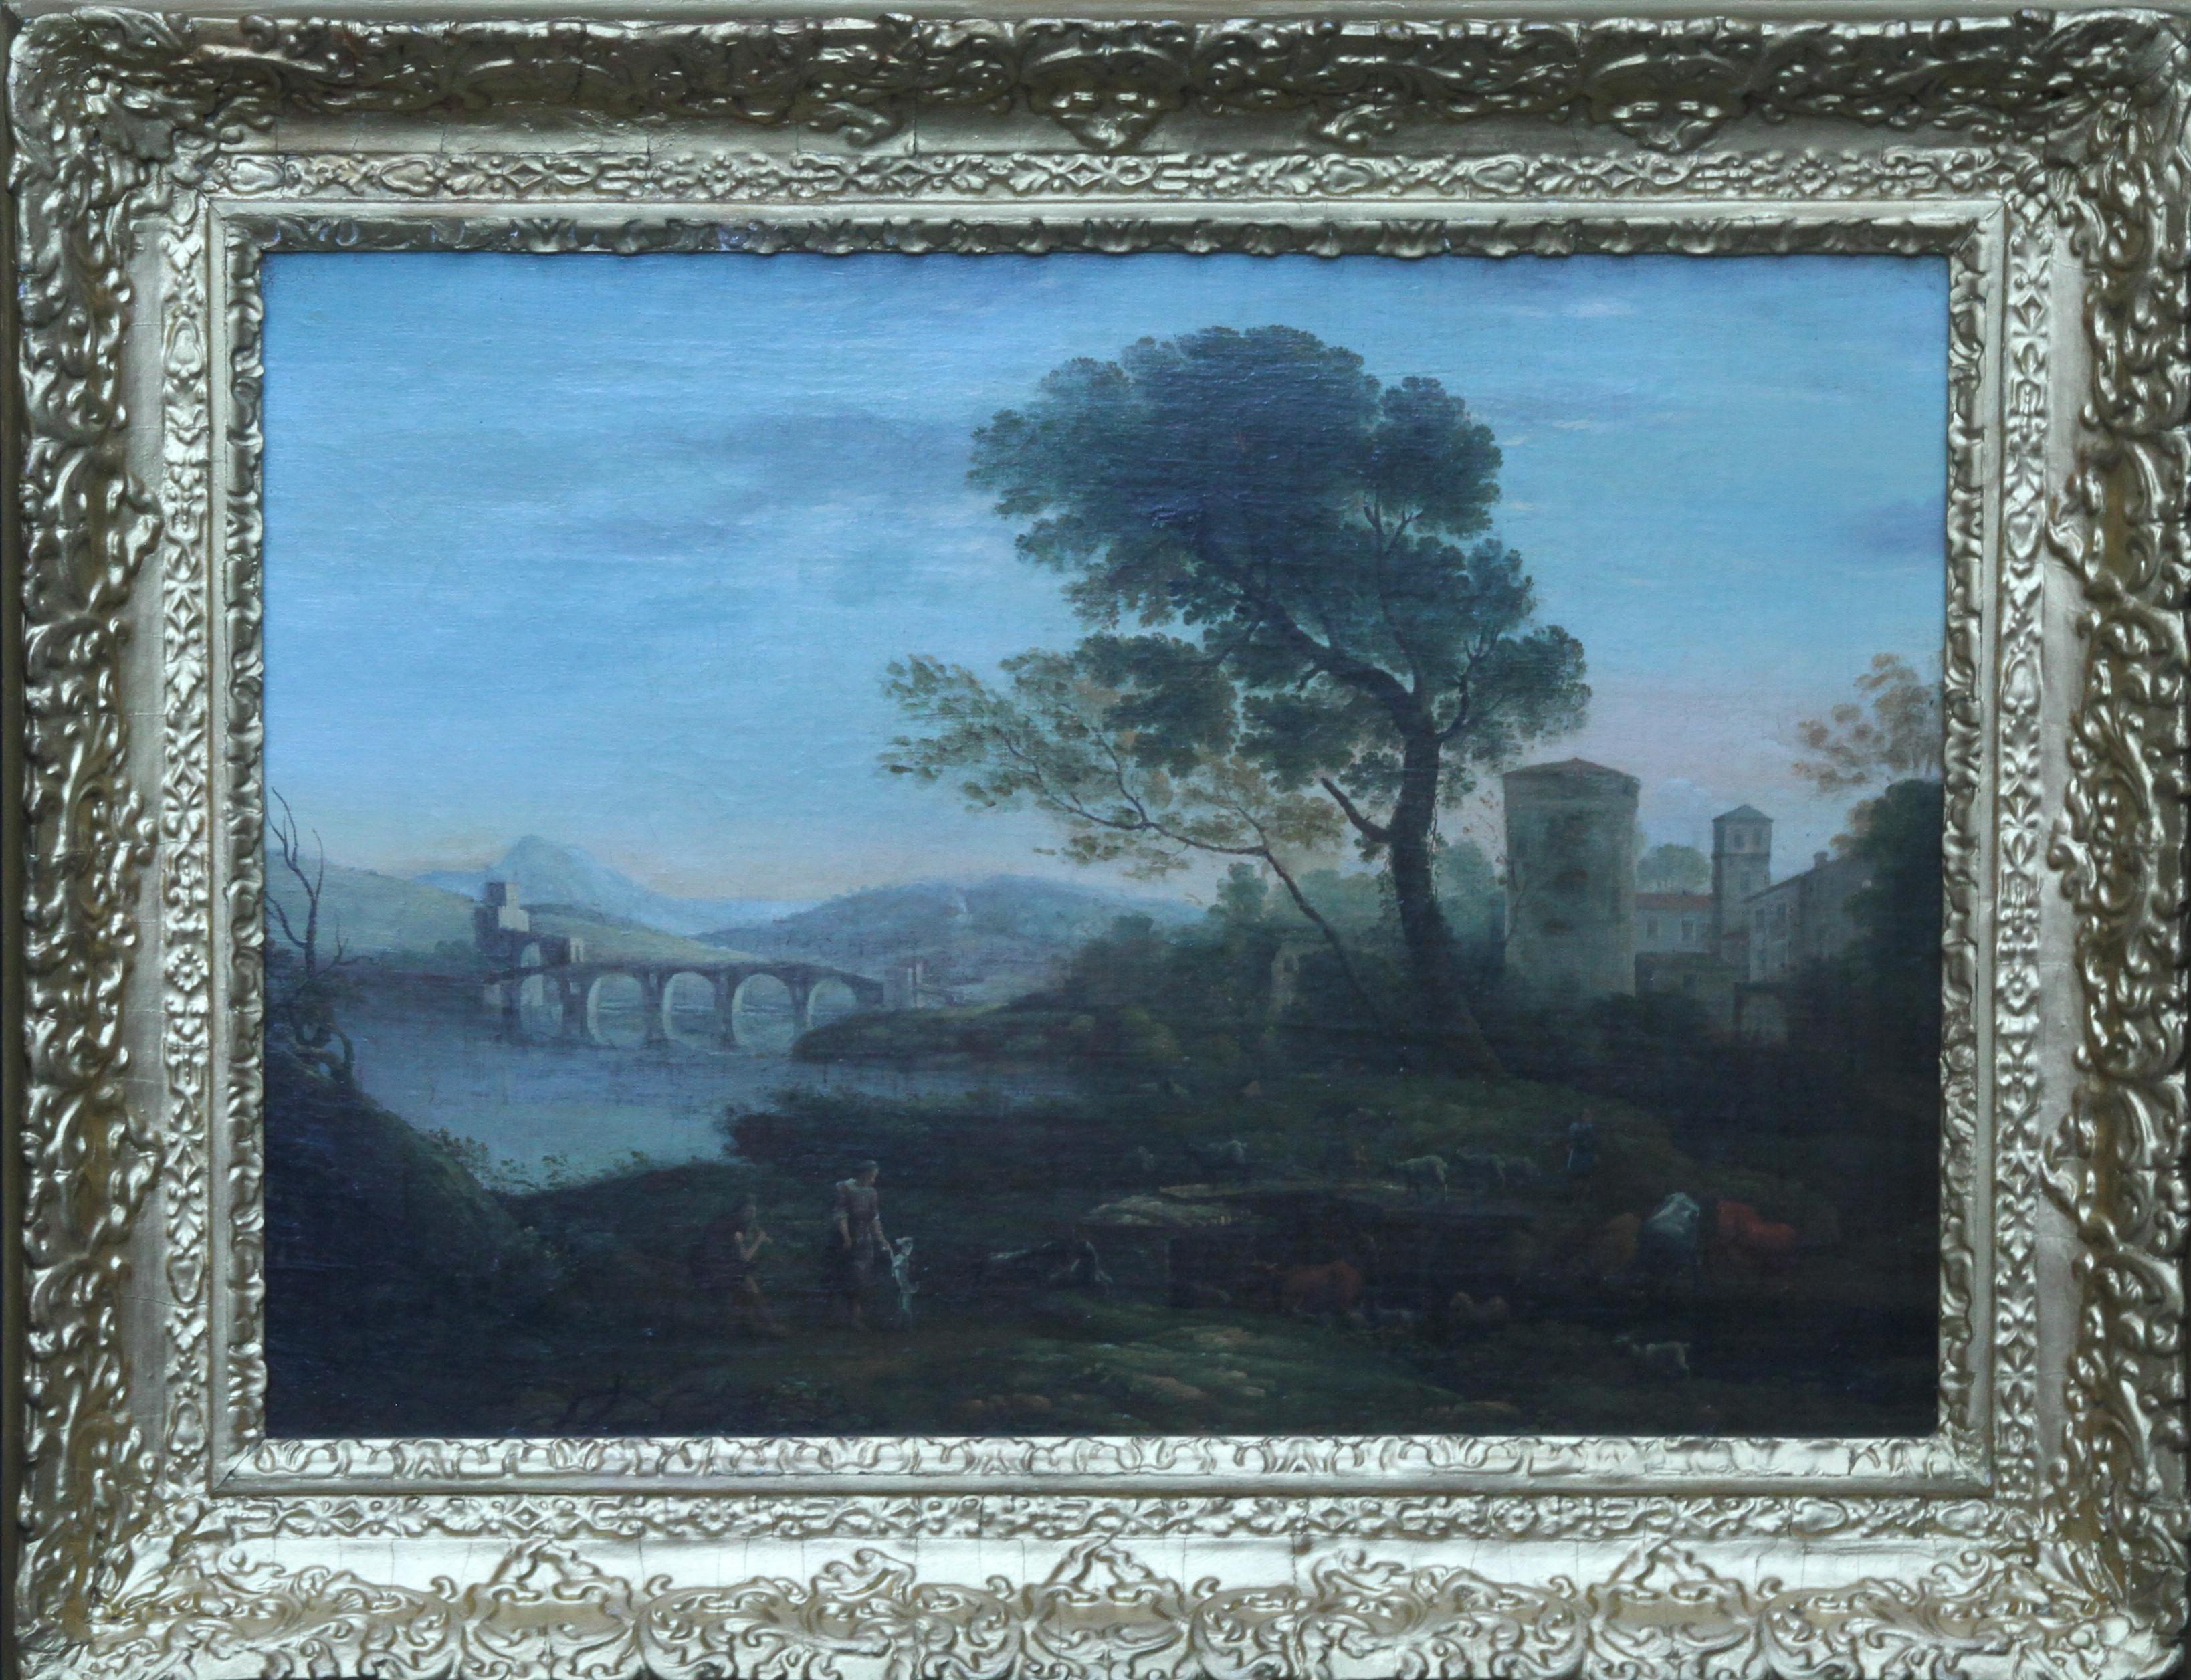 Jans Frans van Bloemen Landscape Painting - Classical Landscape - Flemish art 18th century landscape oil painting